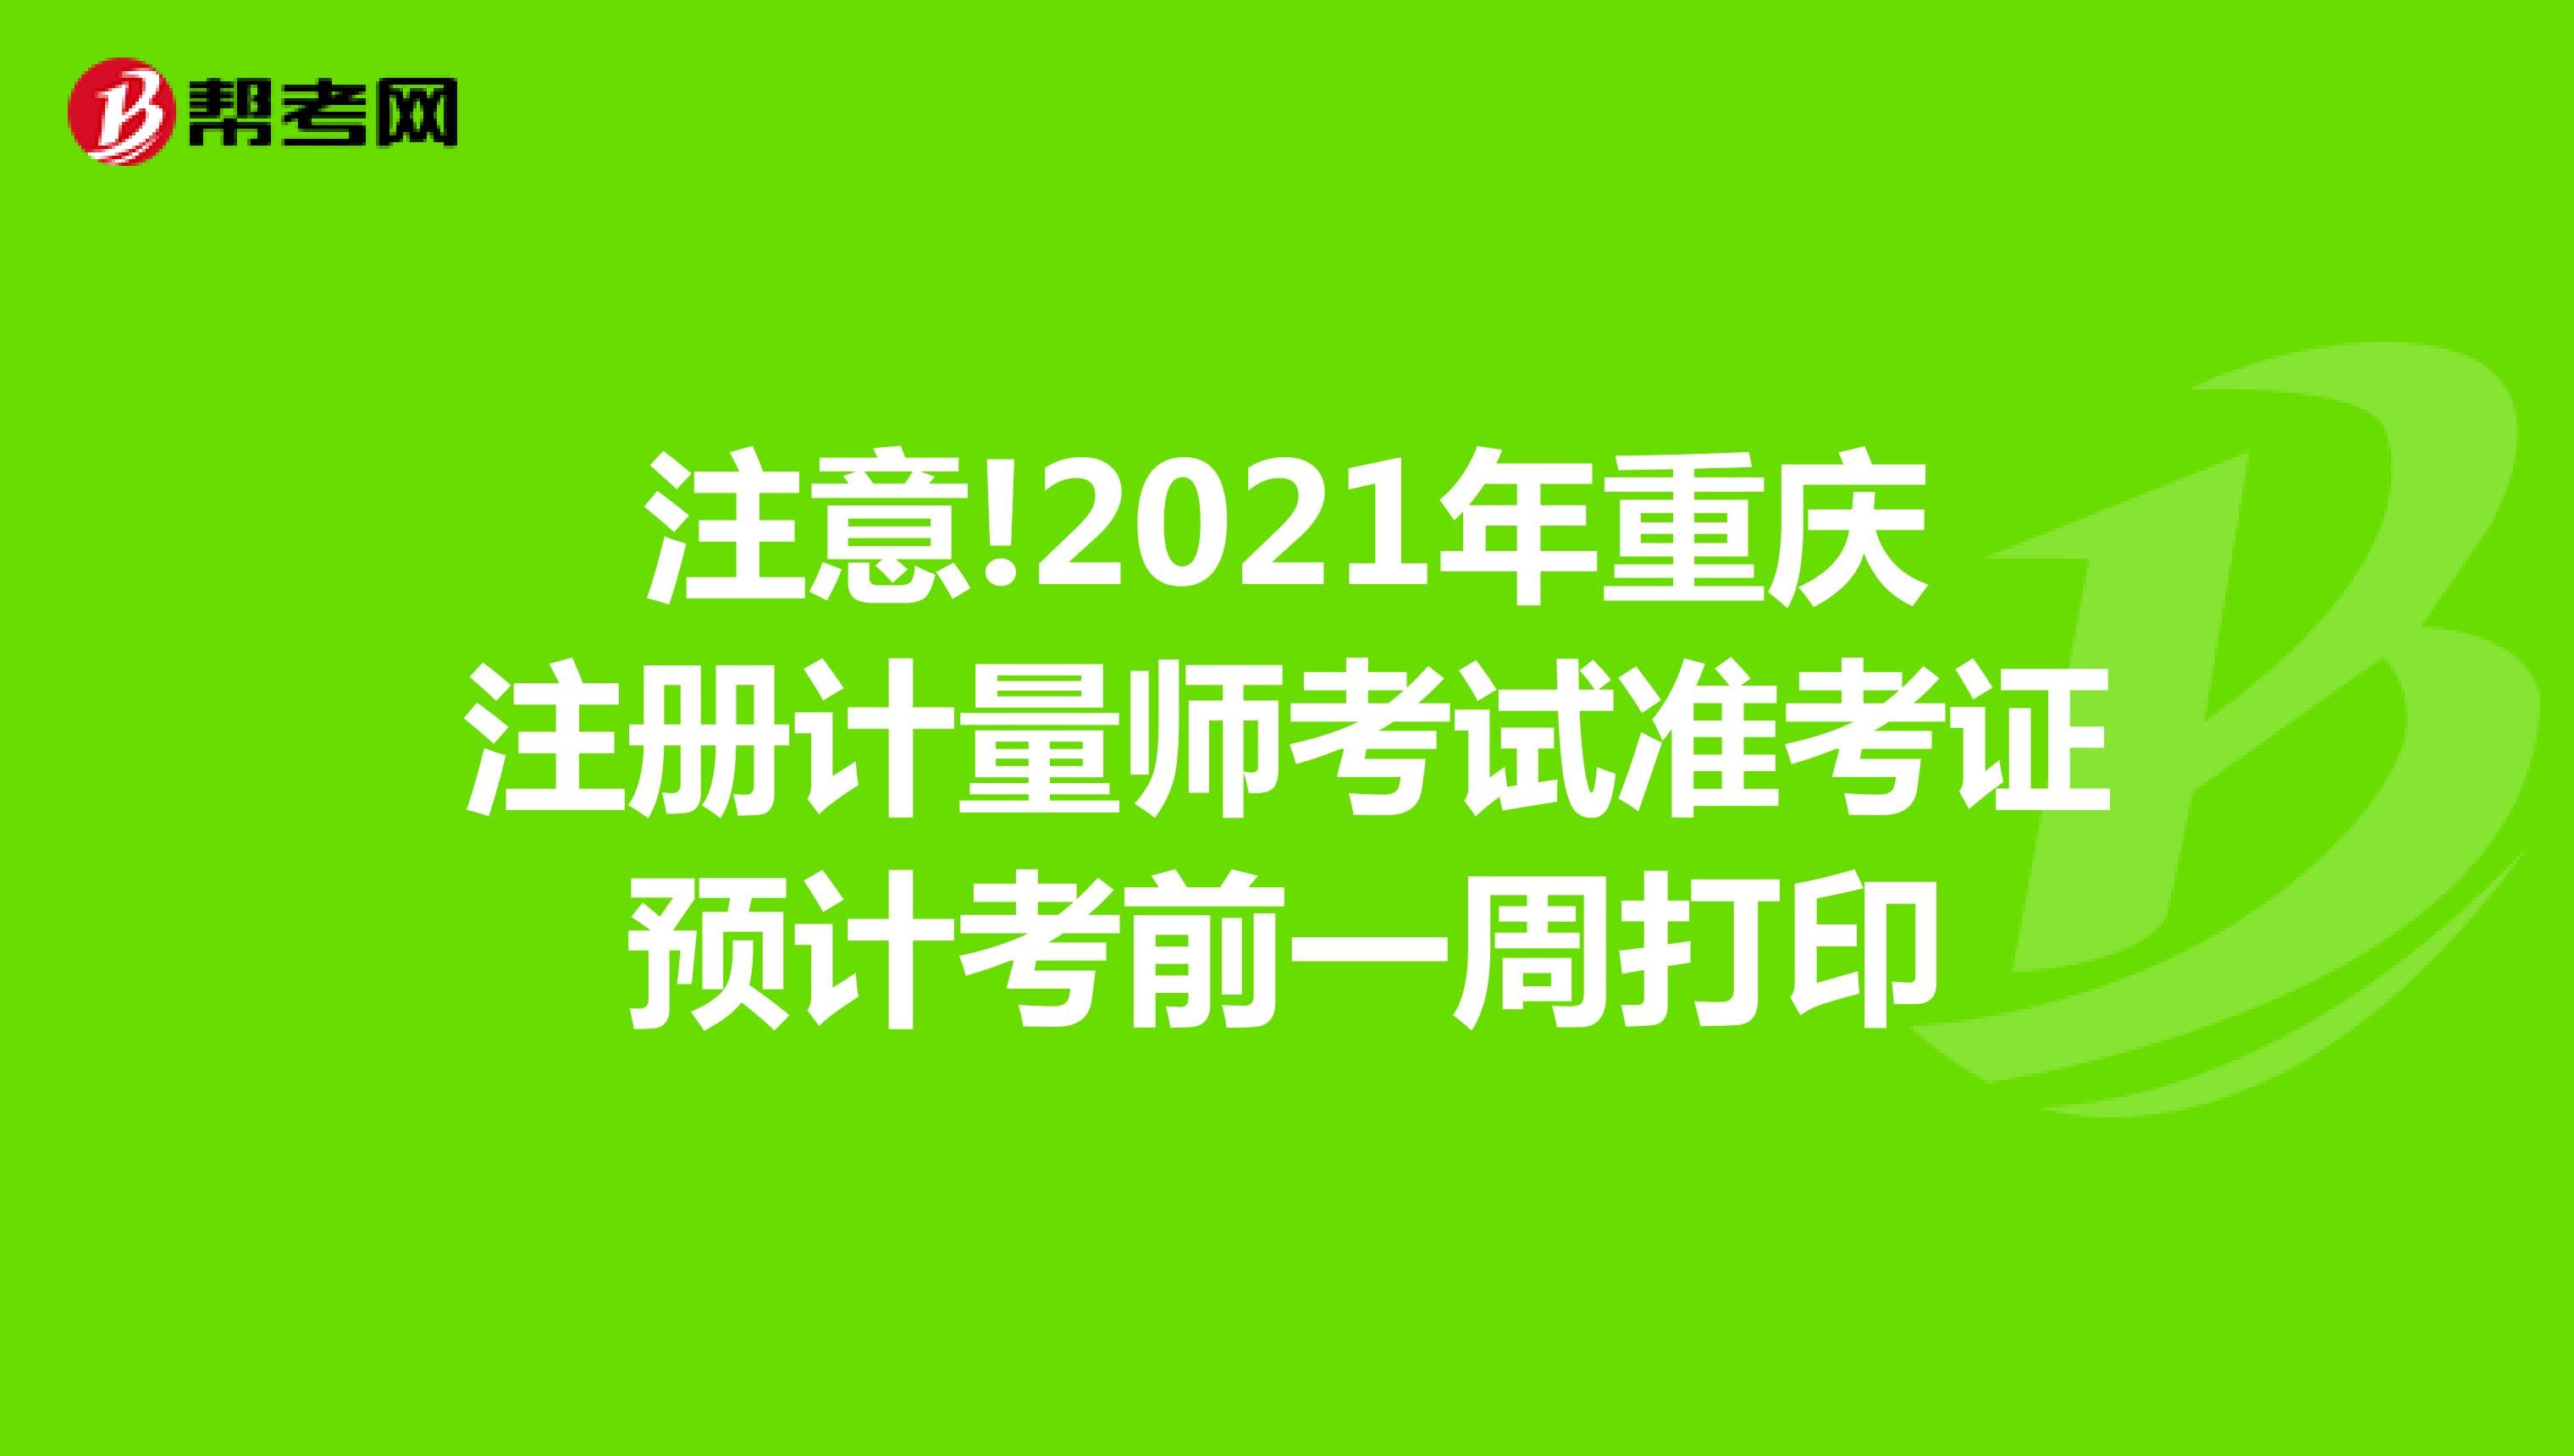 注意!2021年重庆注册计量师考试准考证预计考前一周打印